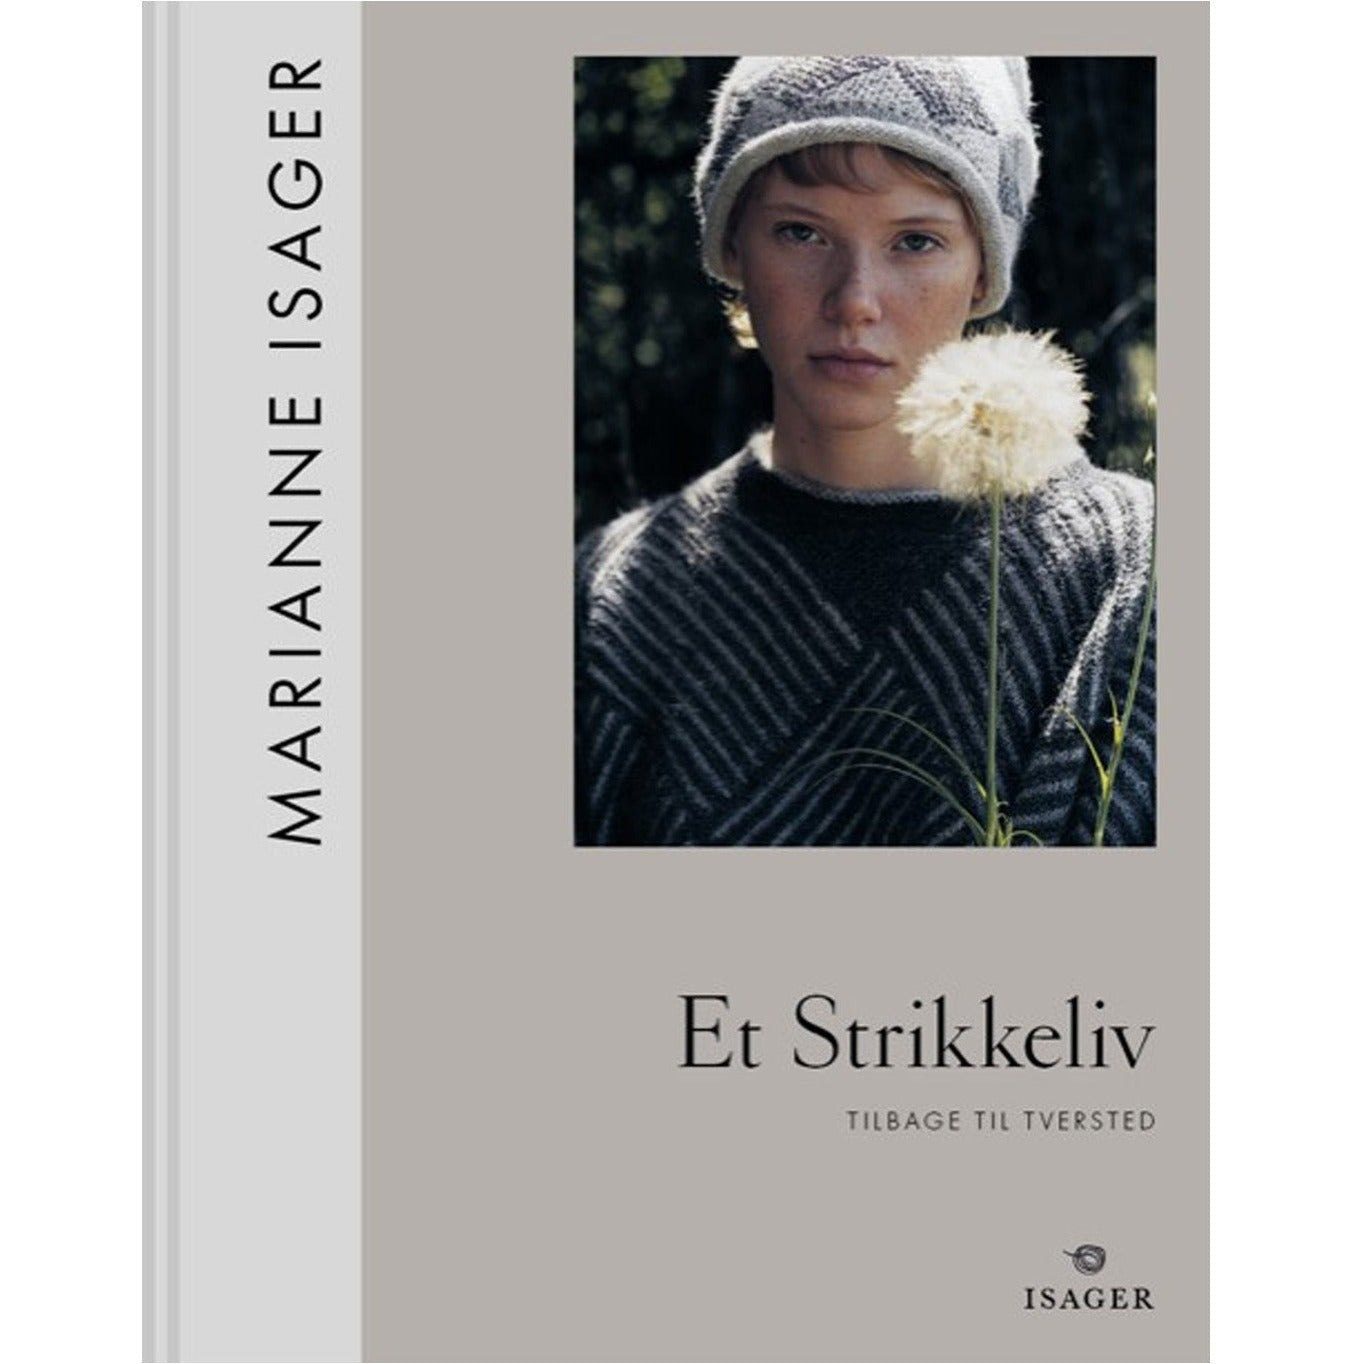 Et Strikkeliv - tilbage til Tversted. En strikkebog af Marianne Isager.